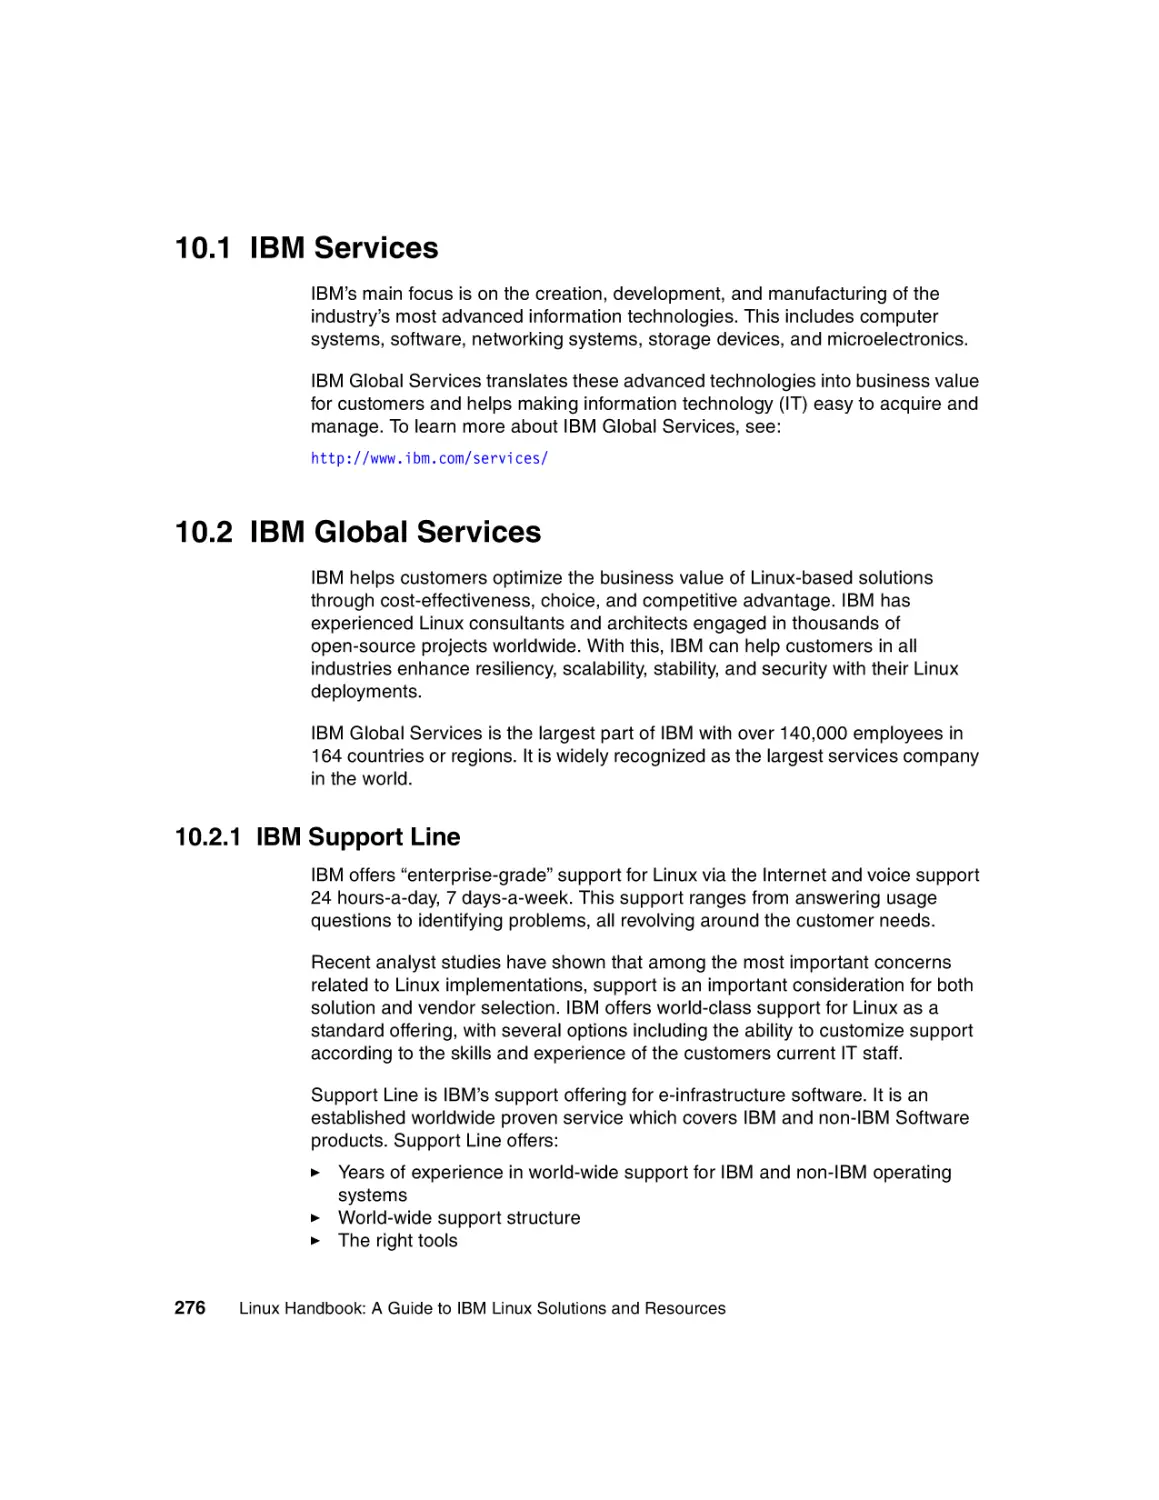 10.1 IBM Services
10.2 IBM Global Services
10.2.1 IBM Support Line